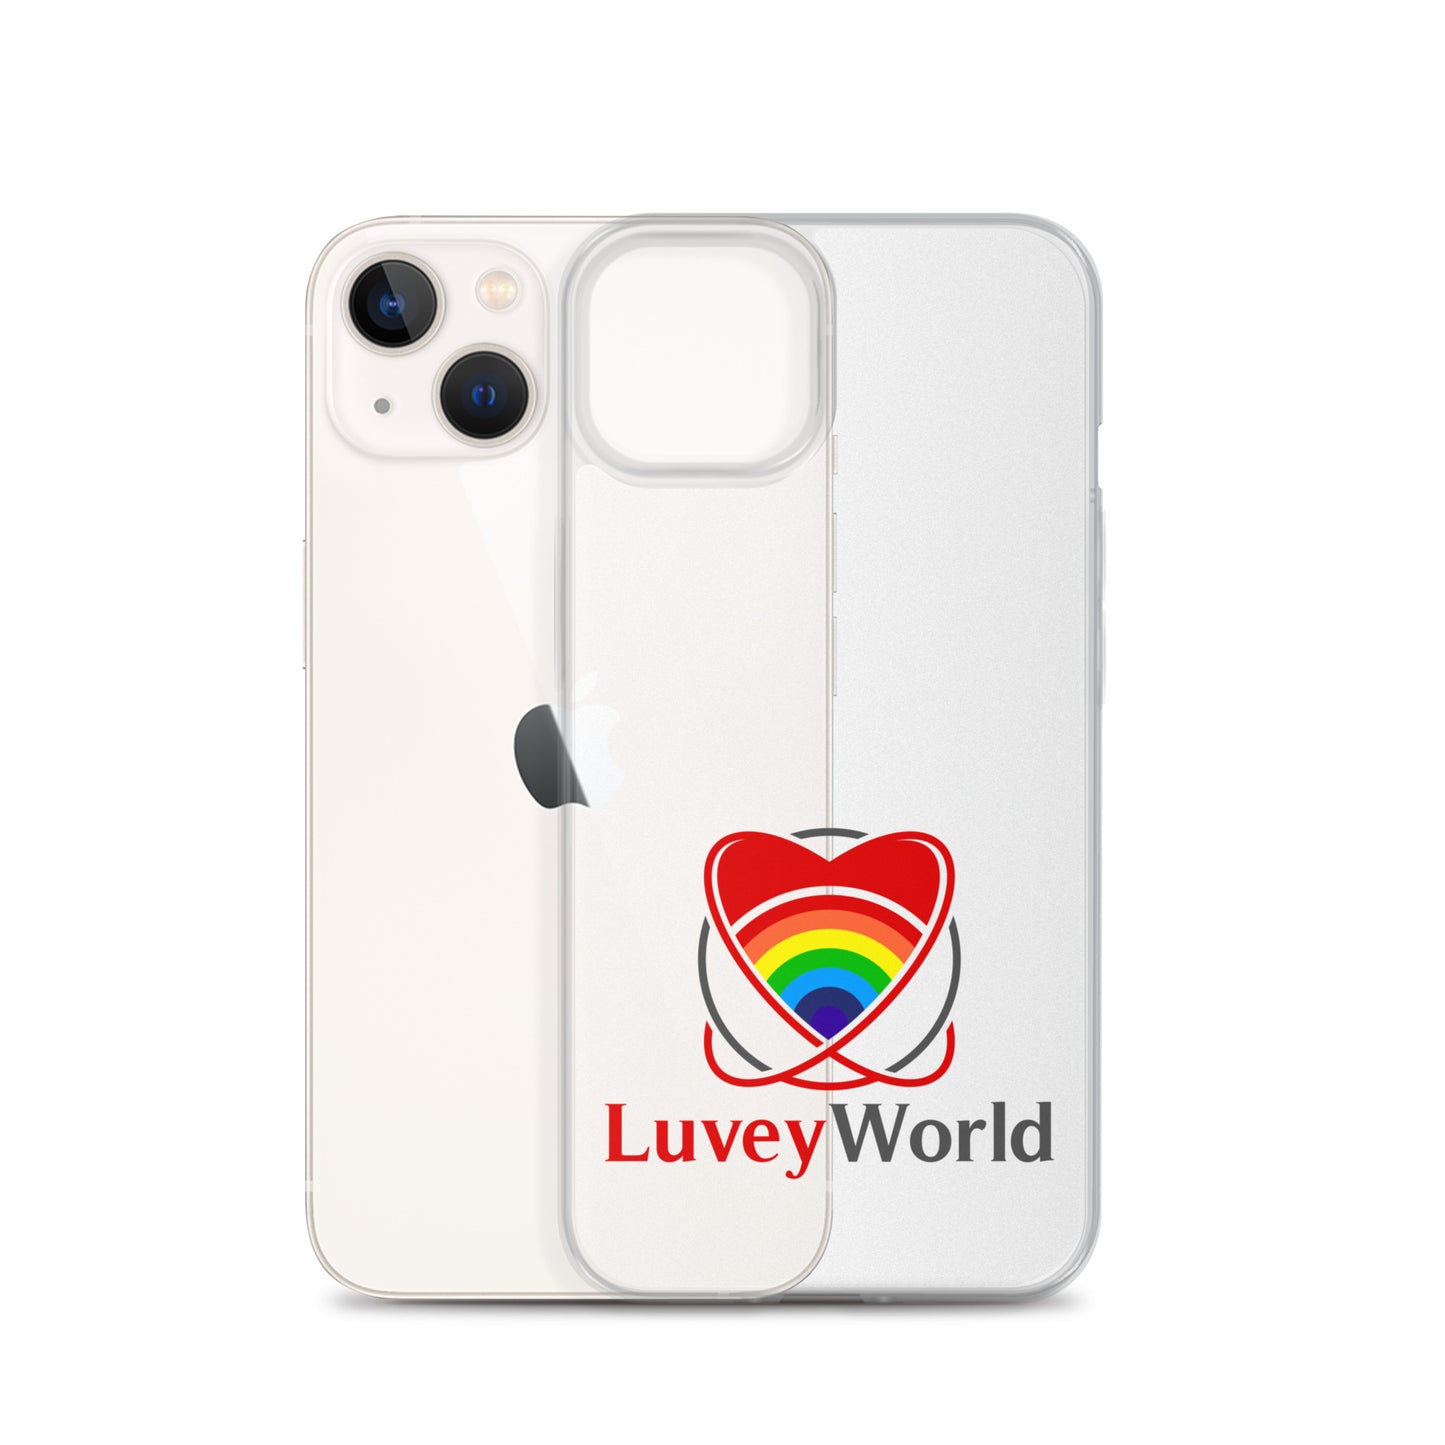 LuveyWorld iPhone Case